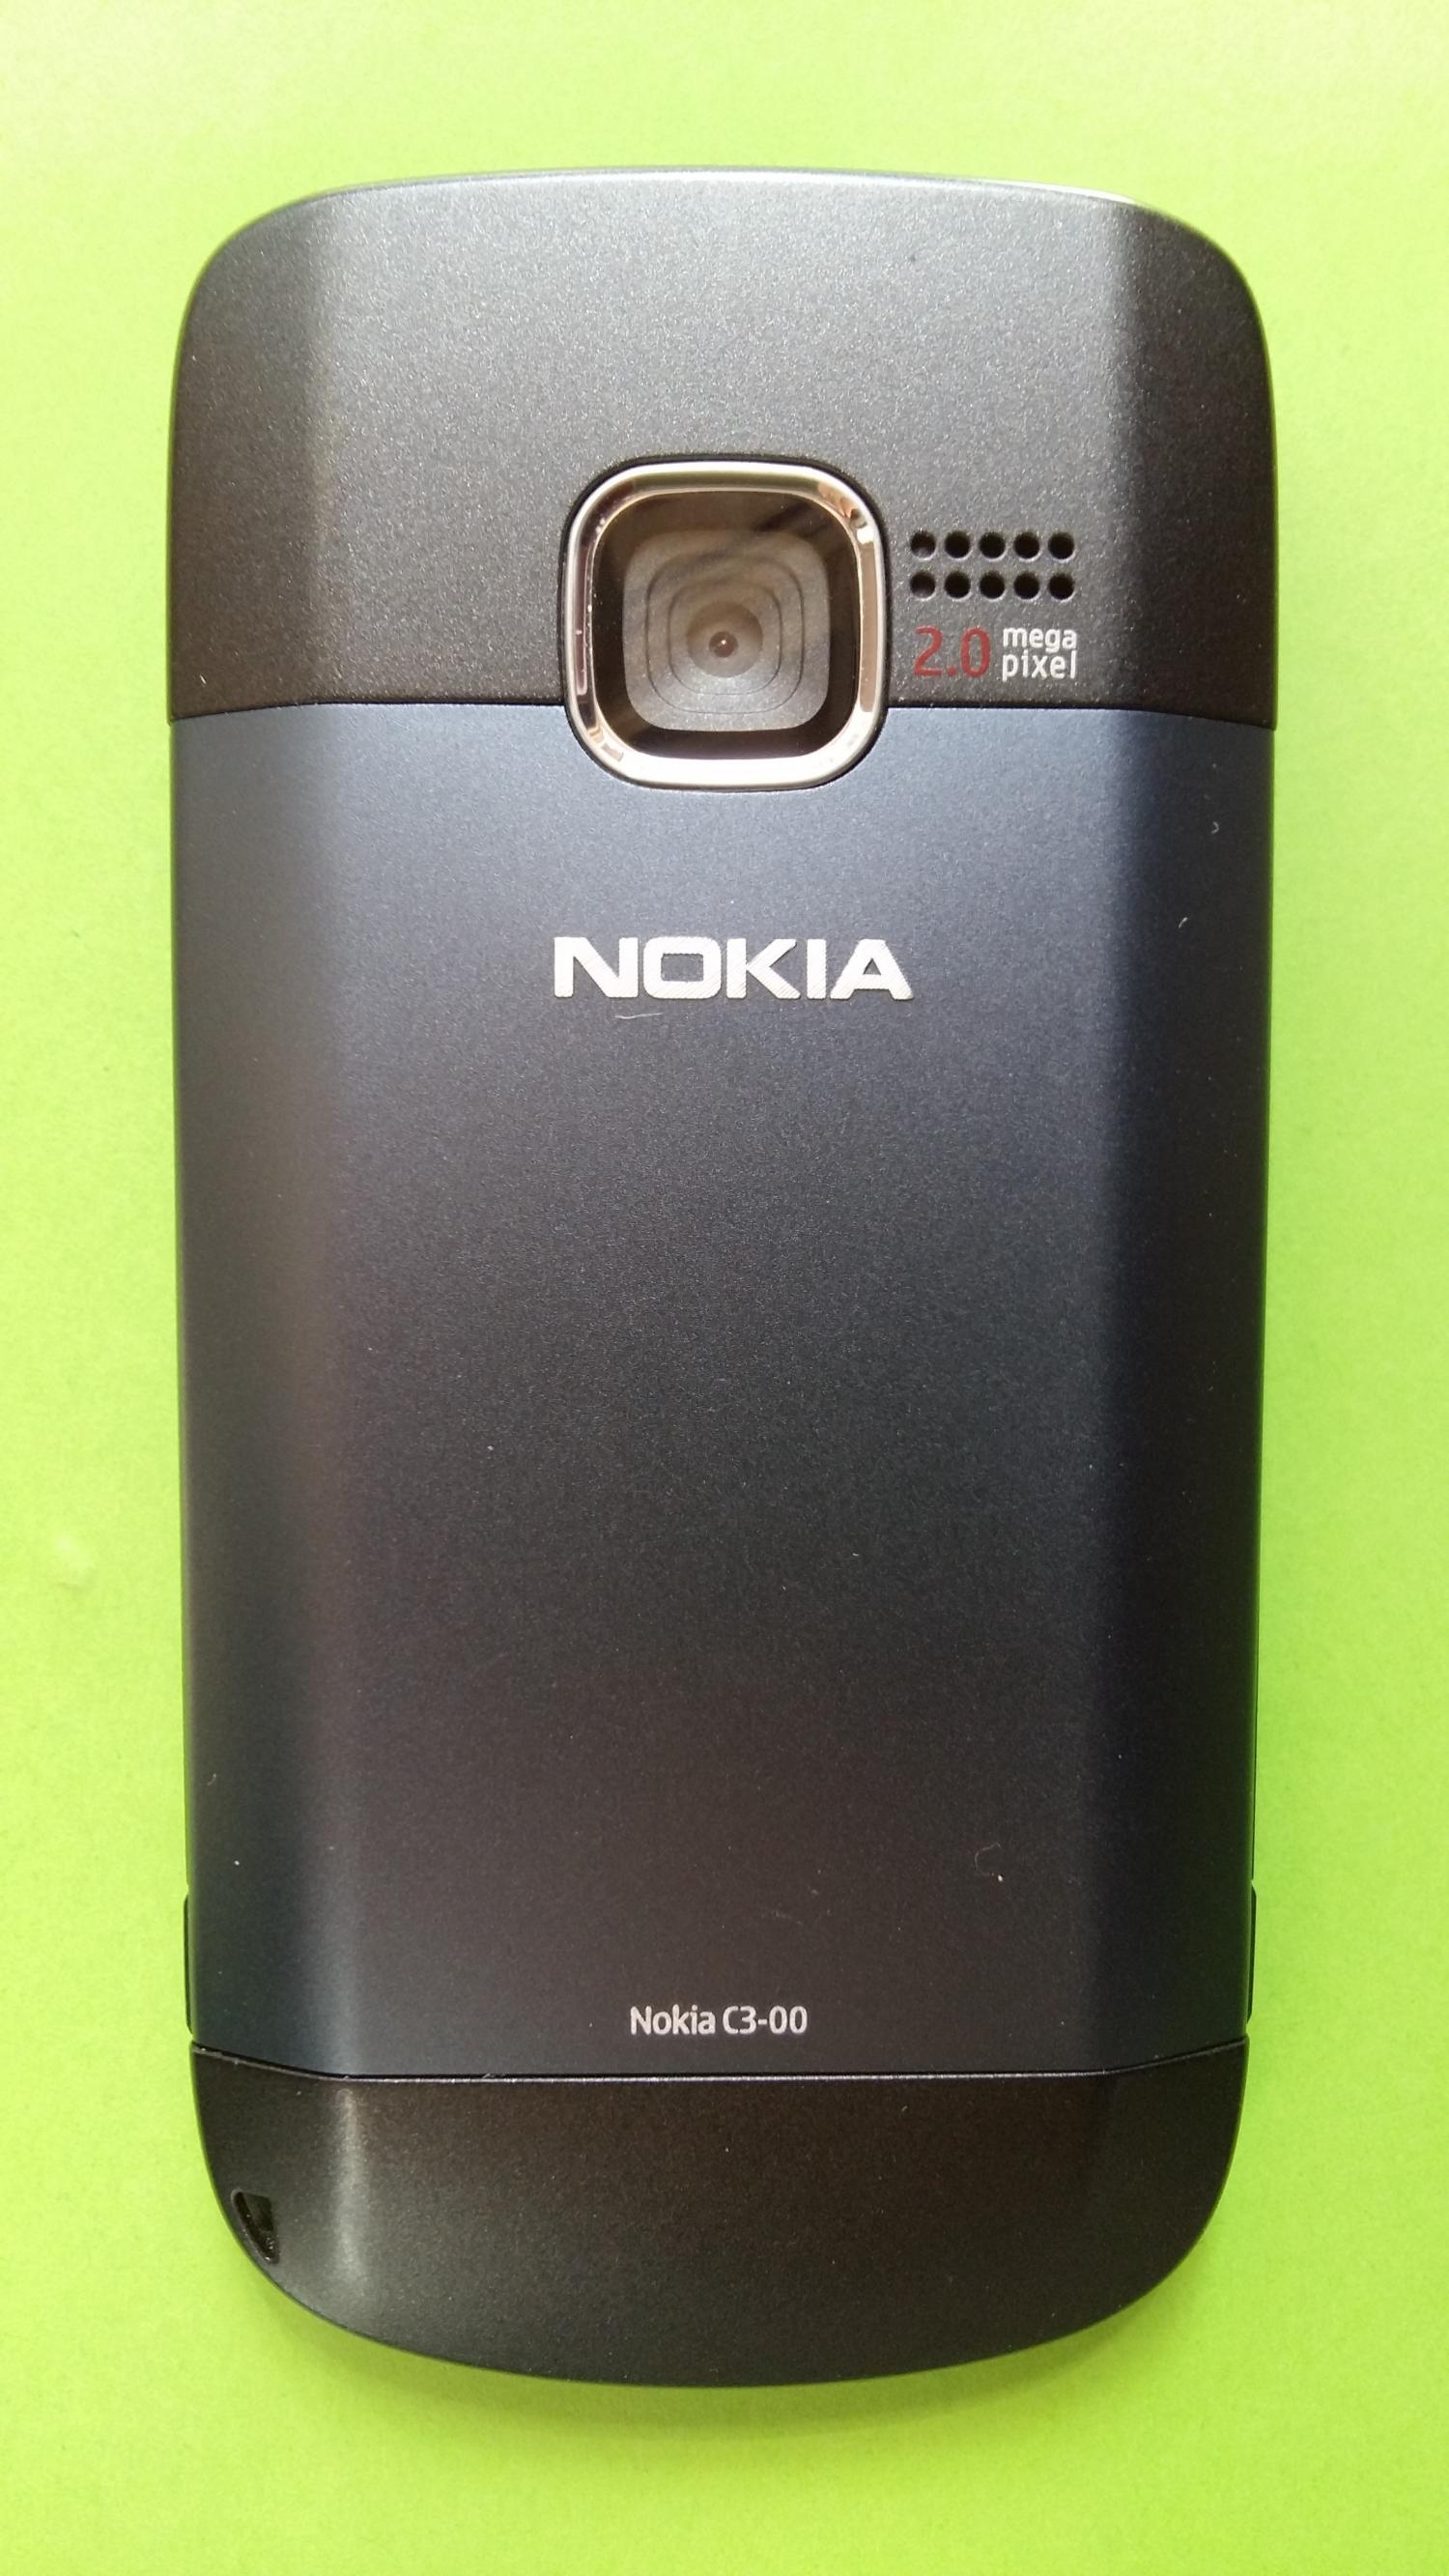 image-7313339-Nokia C3-00 (1)2.jpg